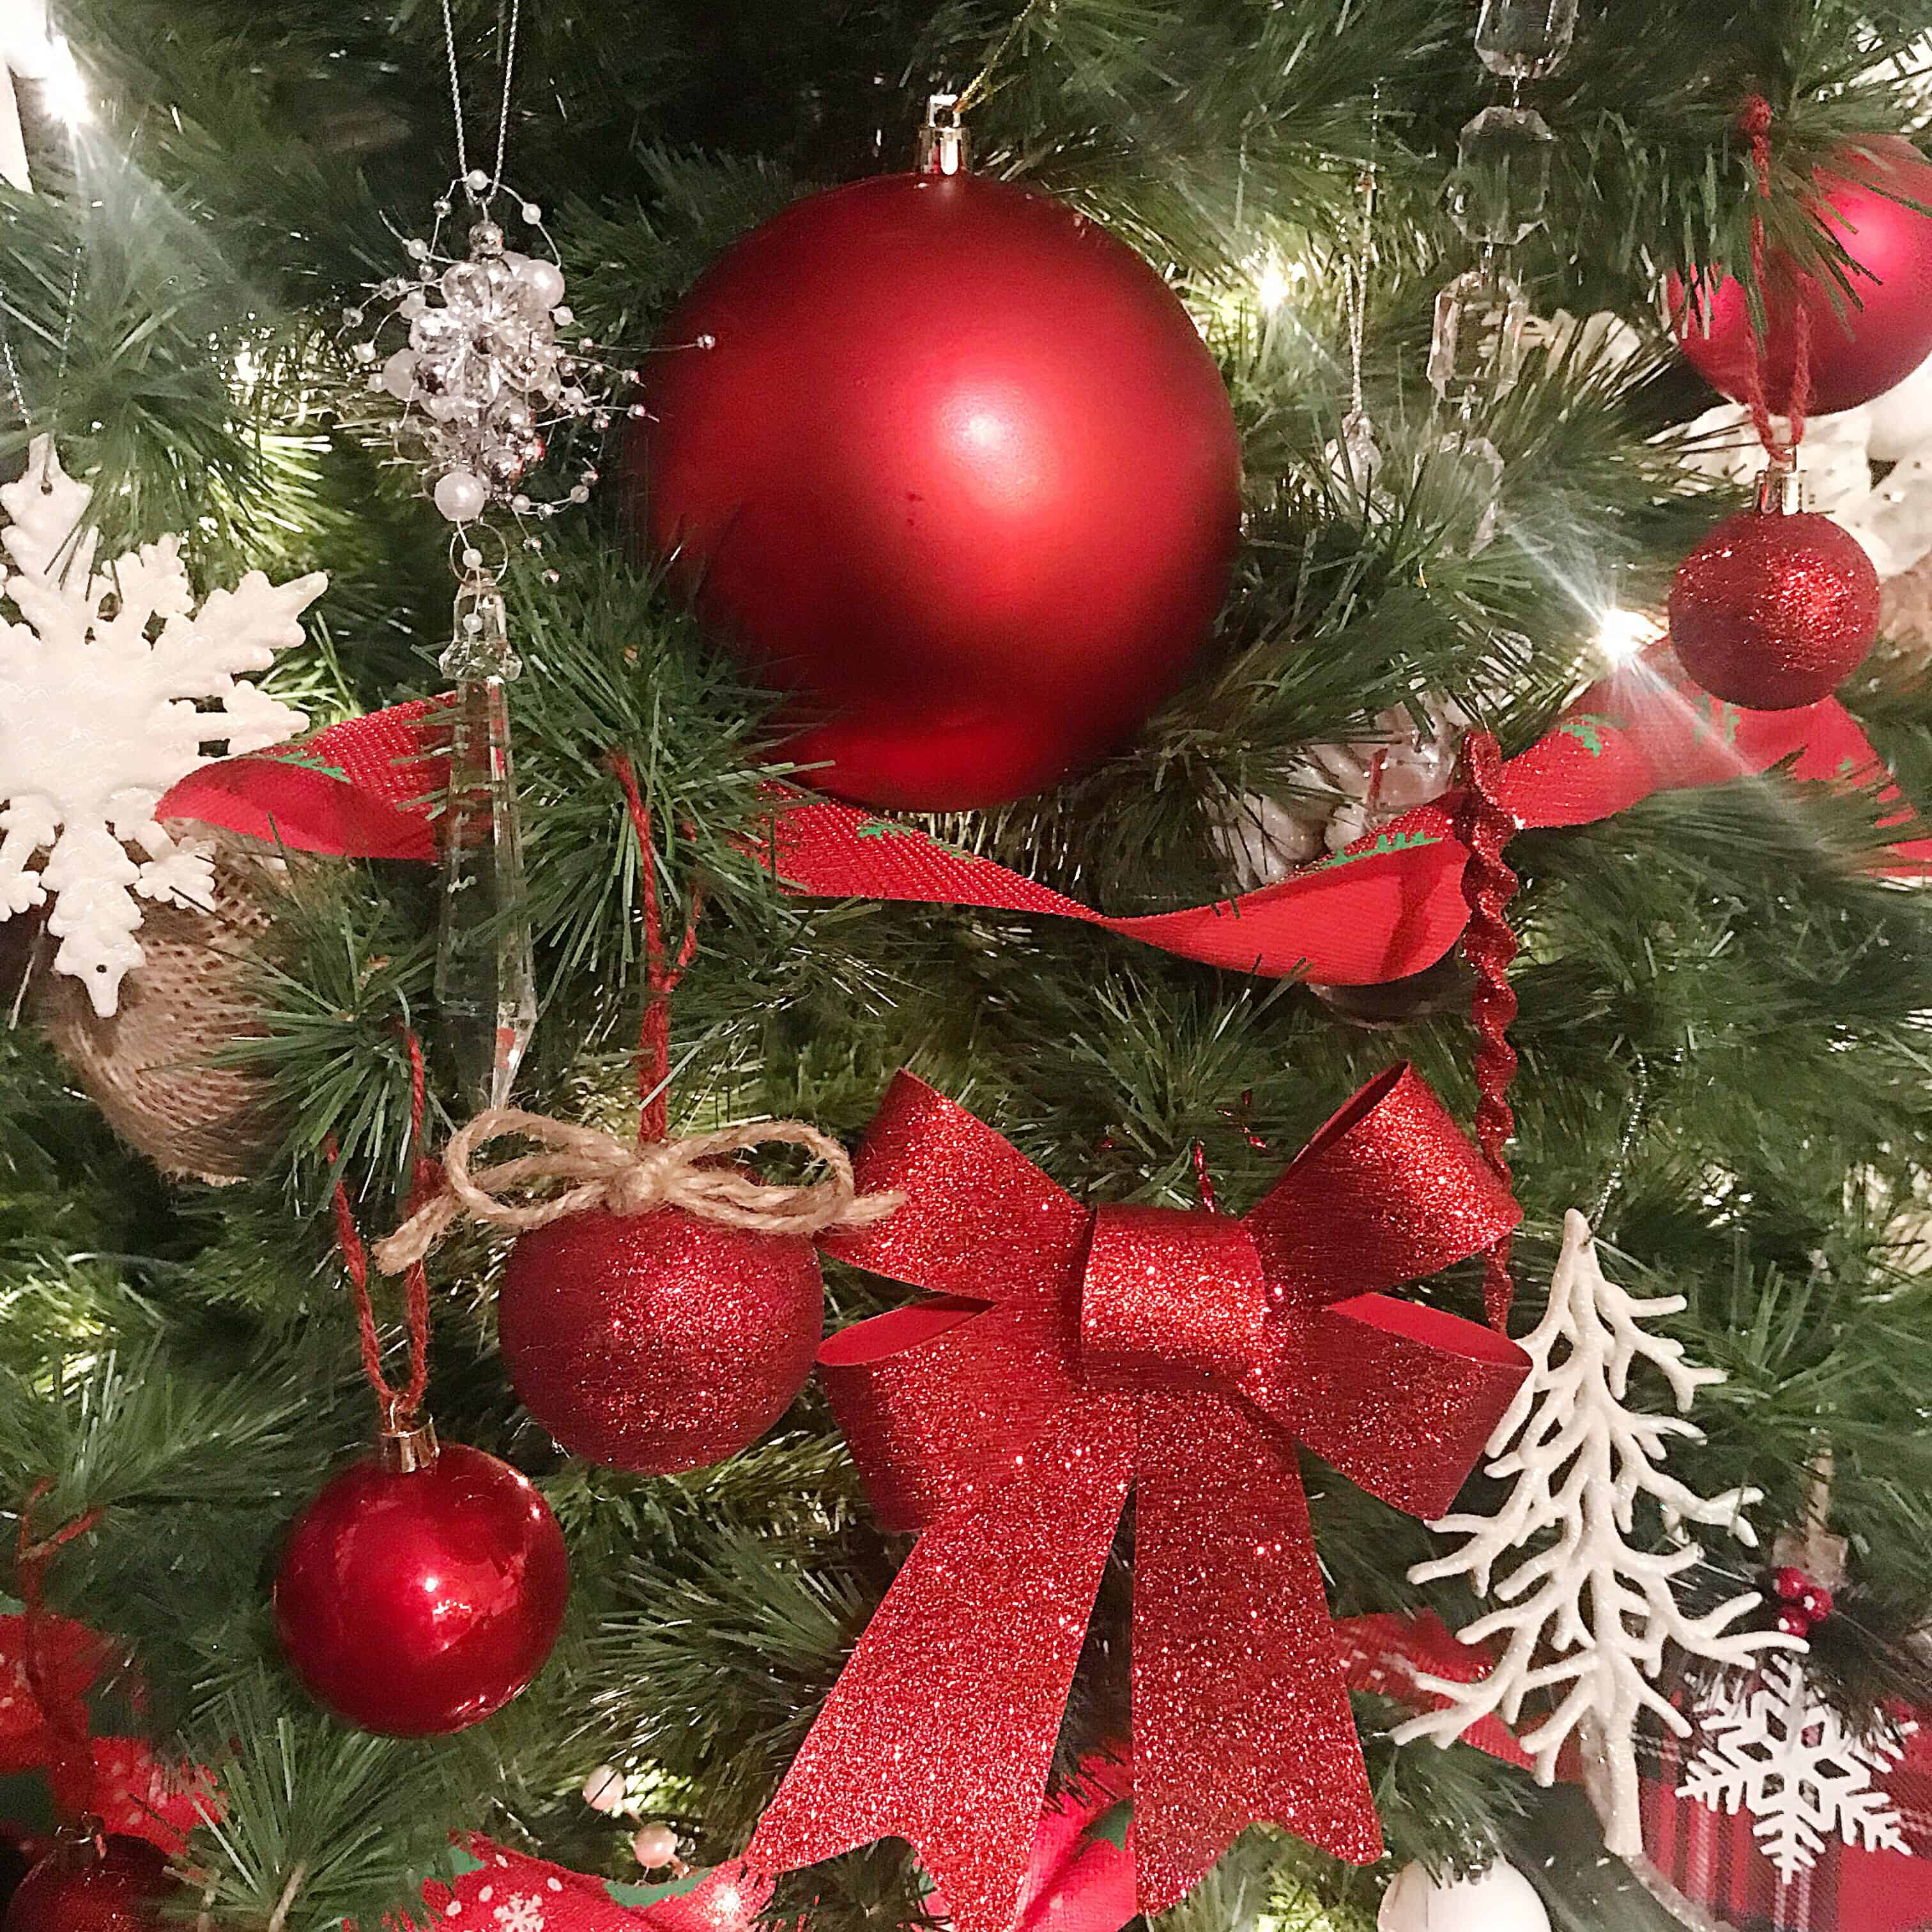 DIY Christmas Decor - DIY Christmas Crafts - Christmas Crafts for Kids - Easy Christmas Crafts - DIY Christmas Decorations - Christmas Projects - Christmas Kid Activities - Farmhouse Decor - Farmhouse Christmas Home Decor